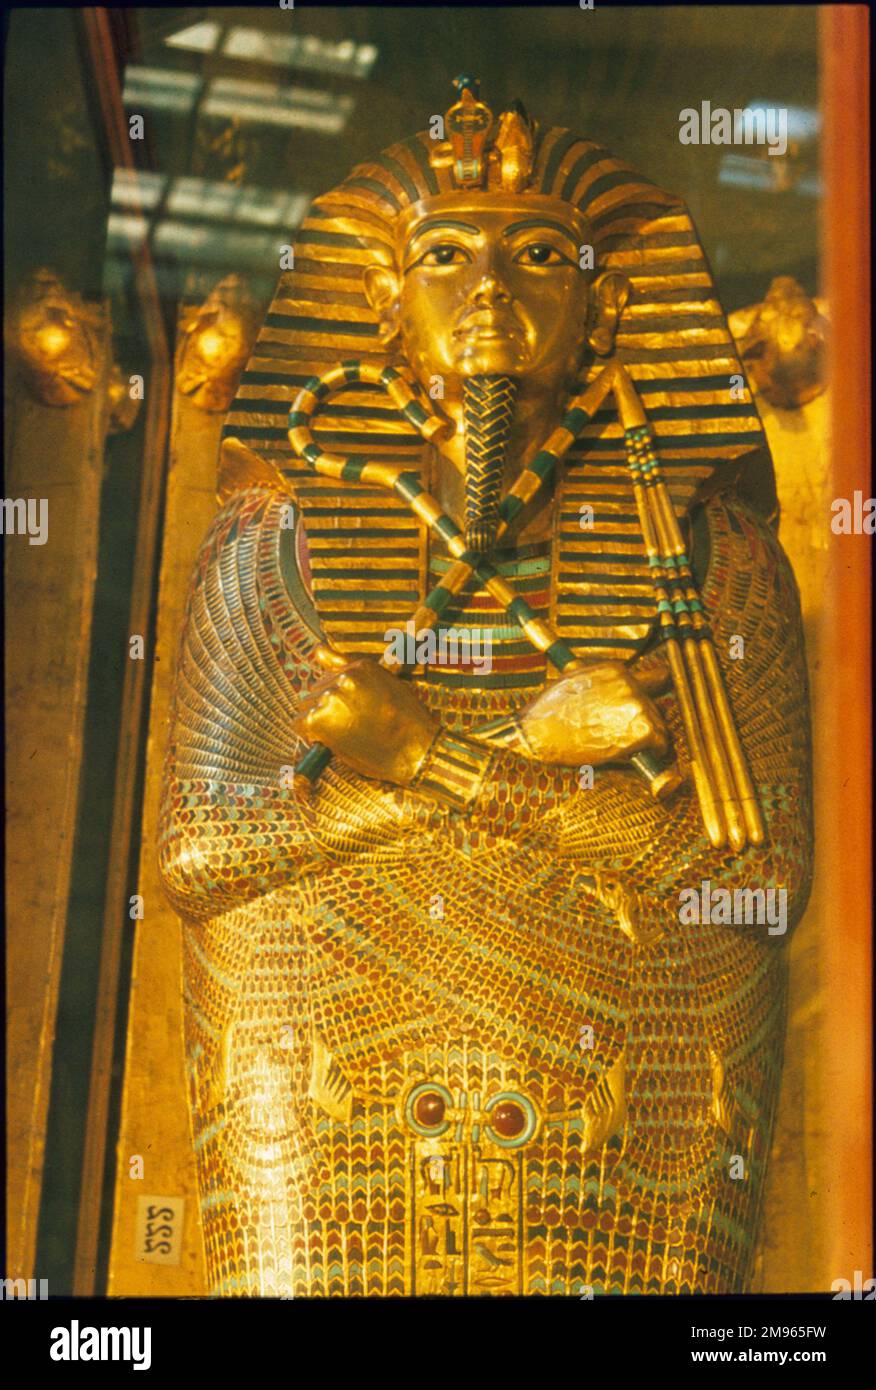 Le sarcophage de Pharoah TOUTANKHAMUN, dirigeant de la dynastie égyptienne de 18th 1361 - 1352 av. J.-C. (Musée égyptien, le Caire). Banque D'Images